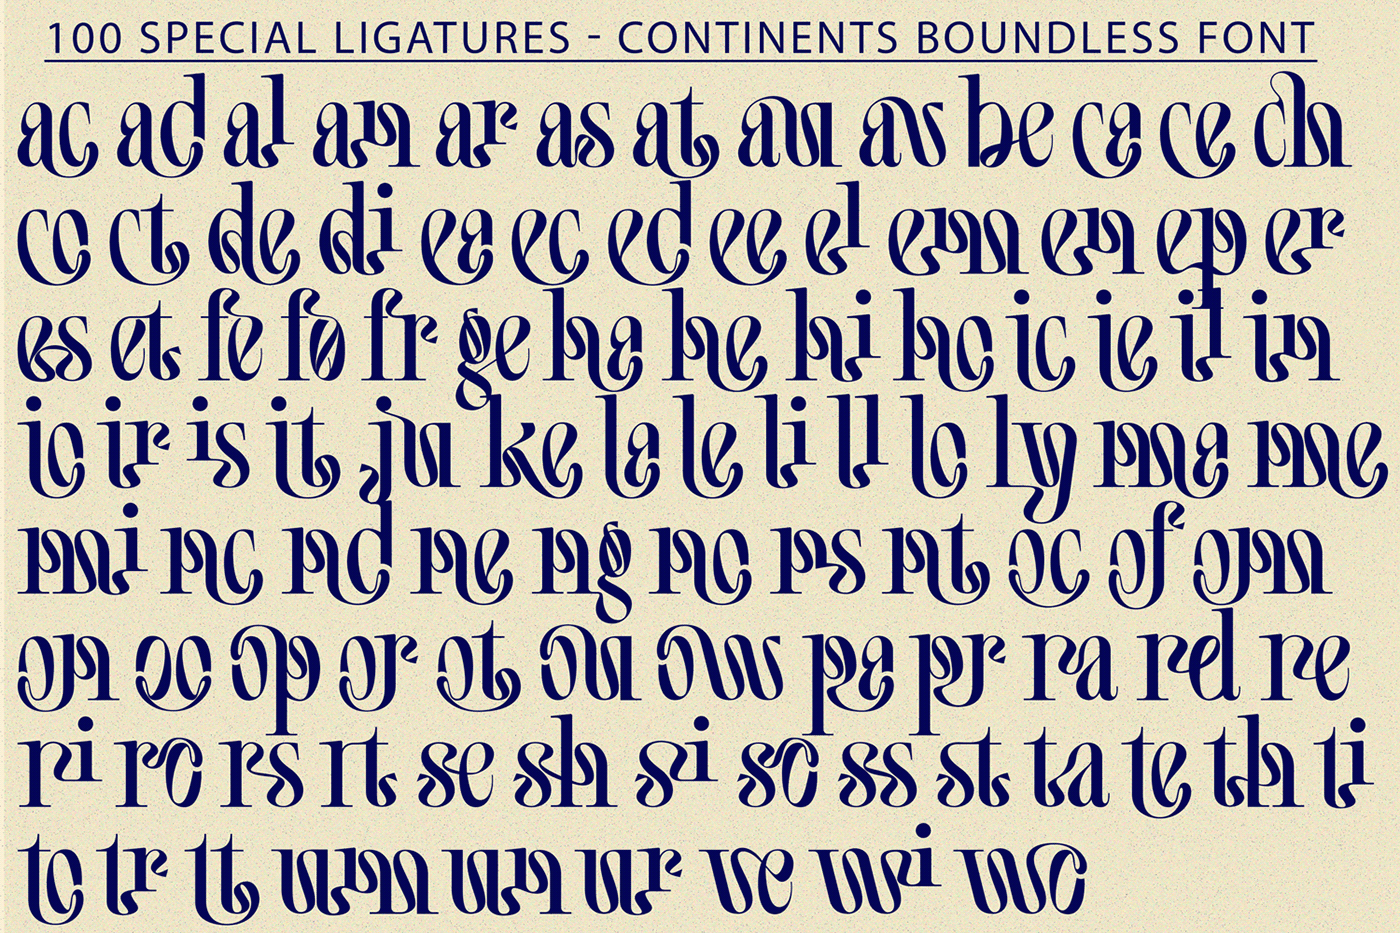 continents elegant font font Unique Font  unique ligatures Boundless Font Continents Boundless